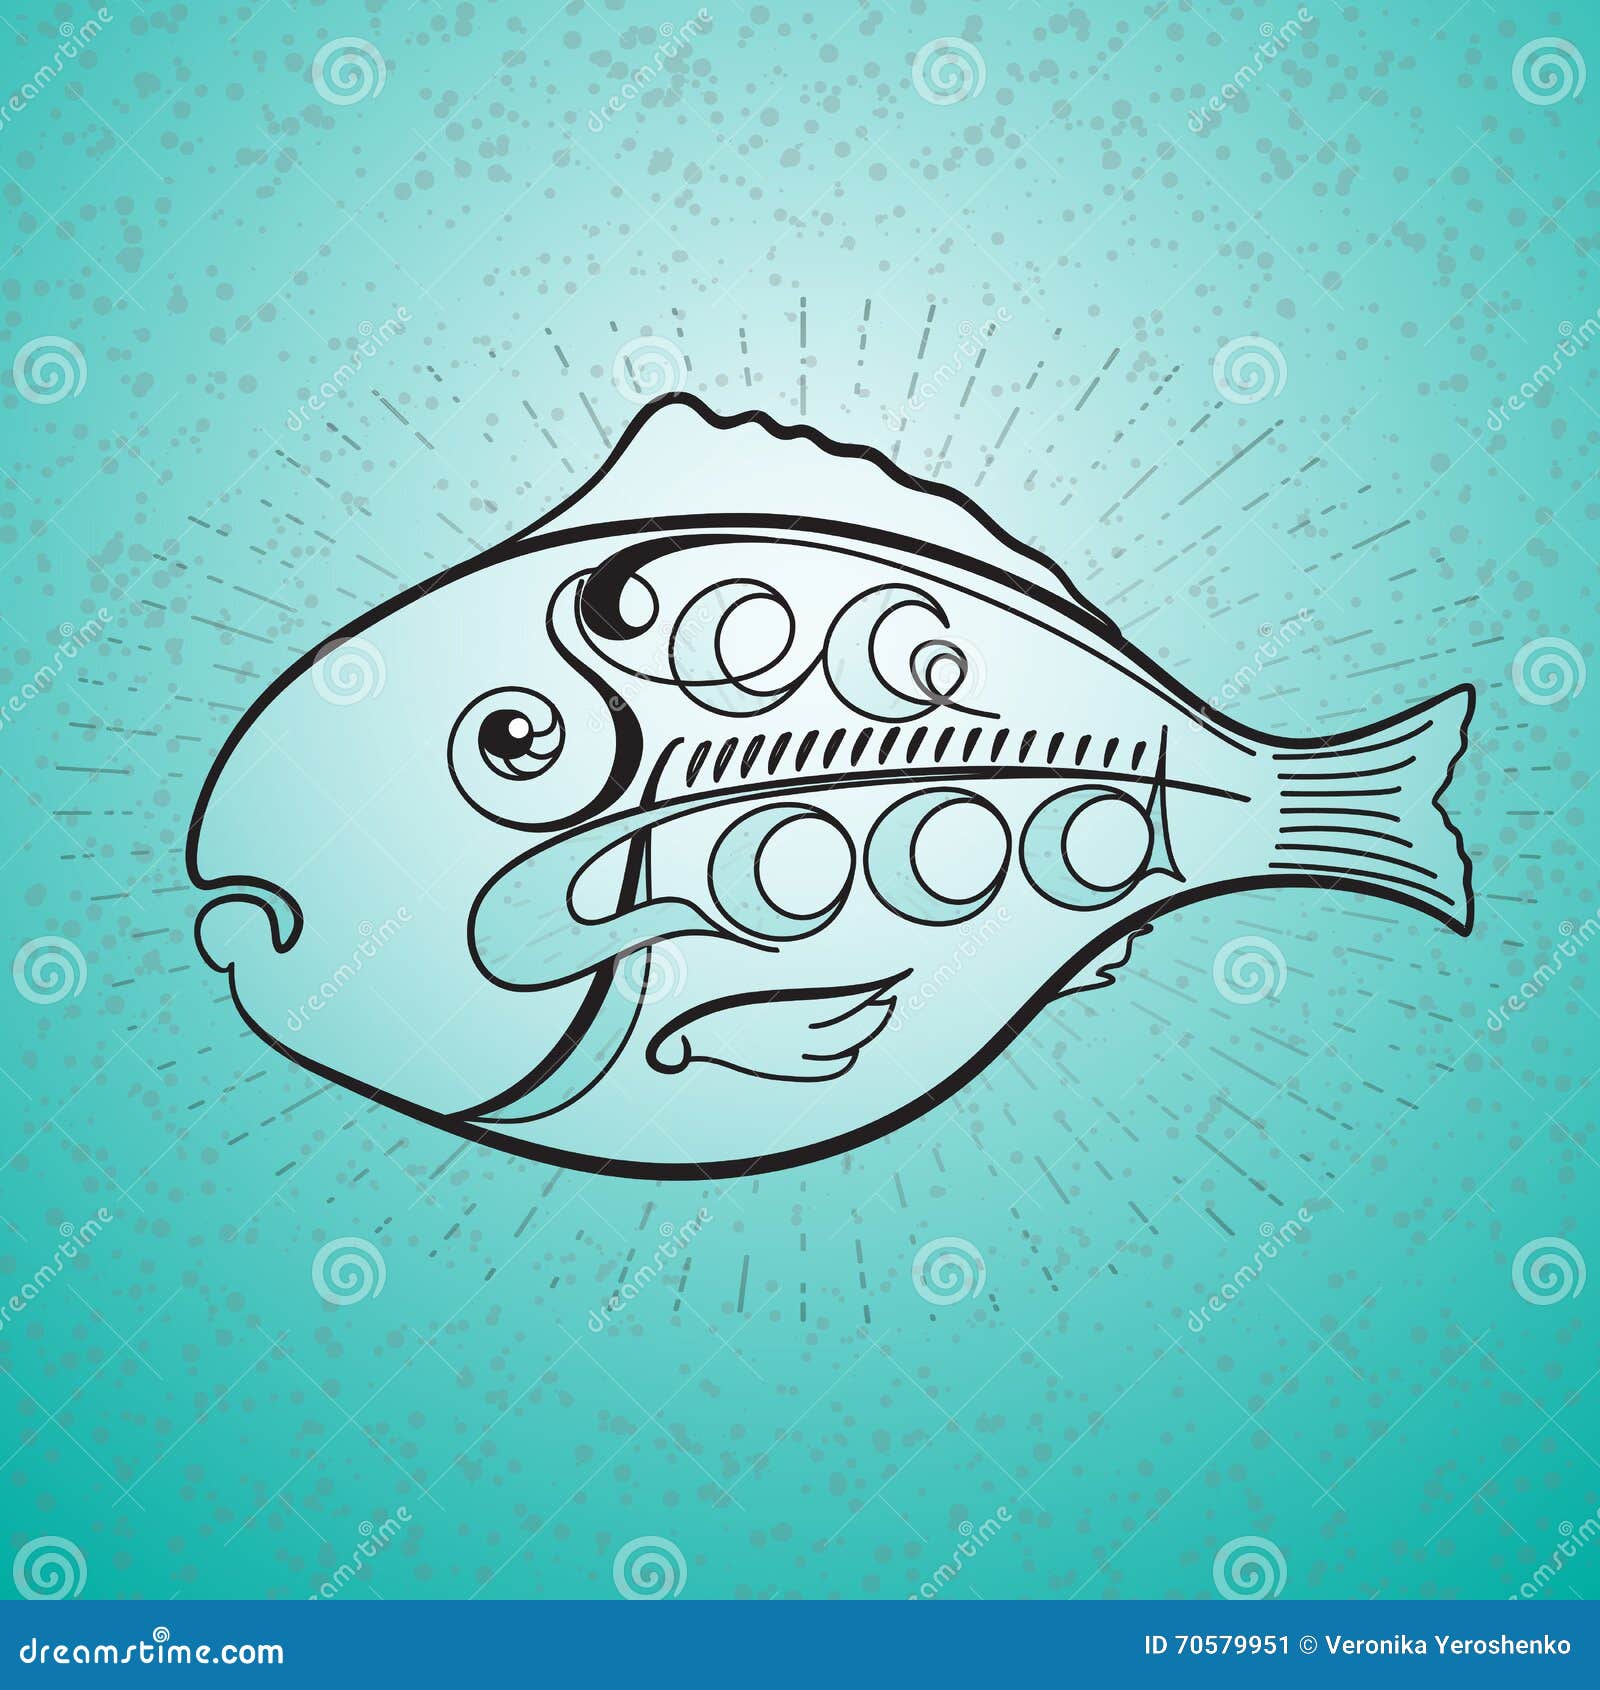 Word of fish. Векторное изображение морепродукты. Рыбки со словами. Надписи слово рыбка. Плакат рыба всему голова.